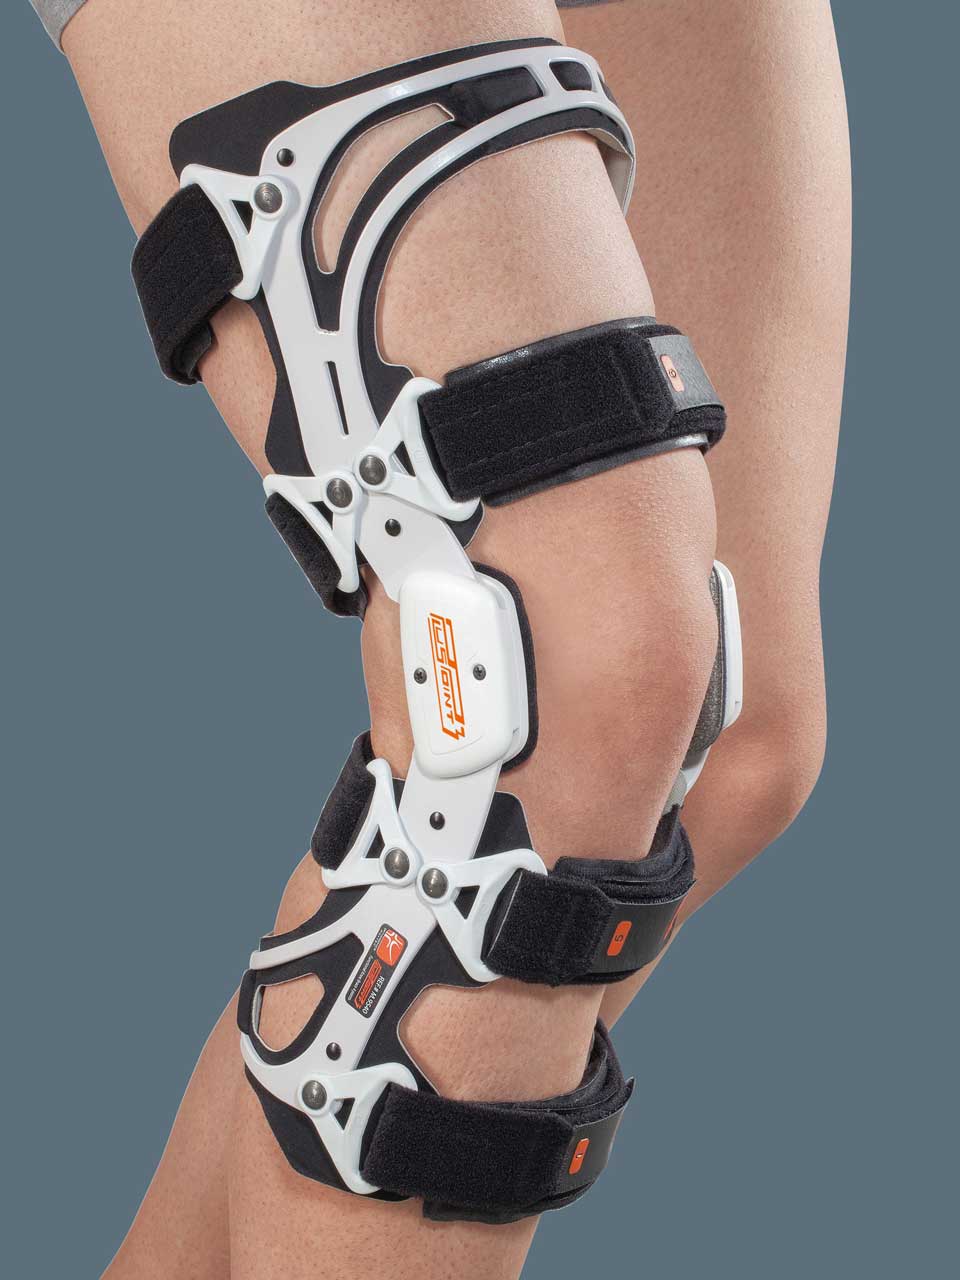 Pluspoint 3 - Funktionale Orthese für das Kniegelenk